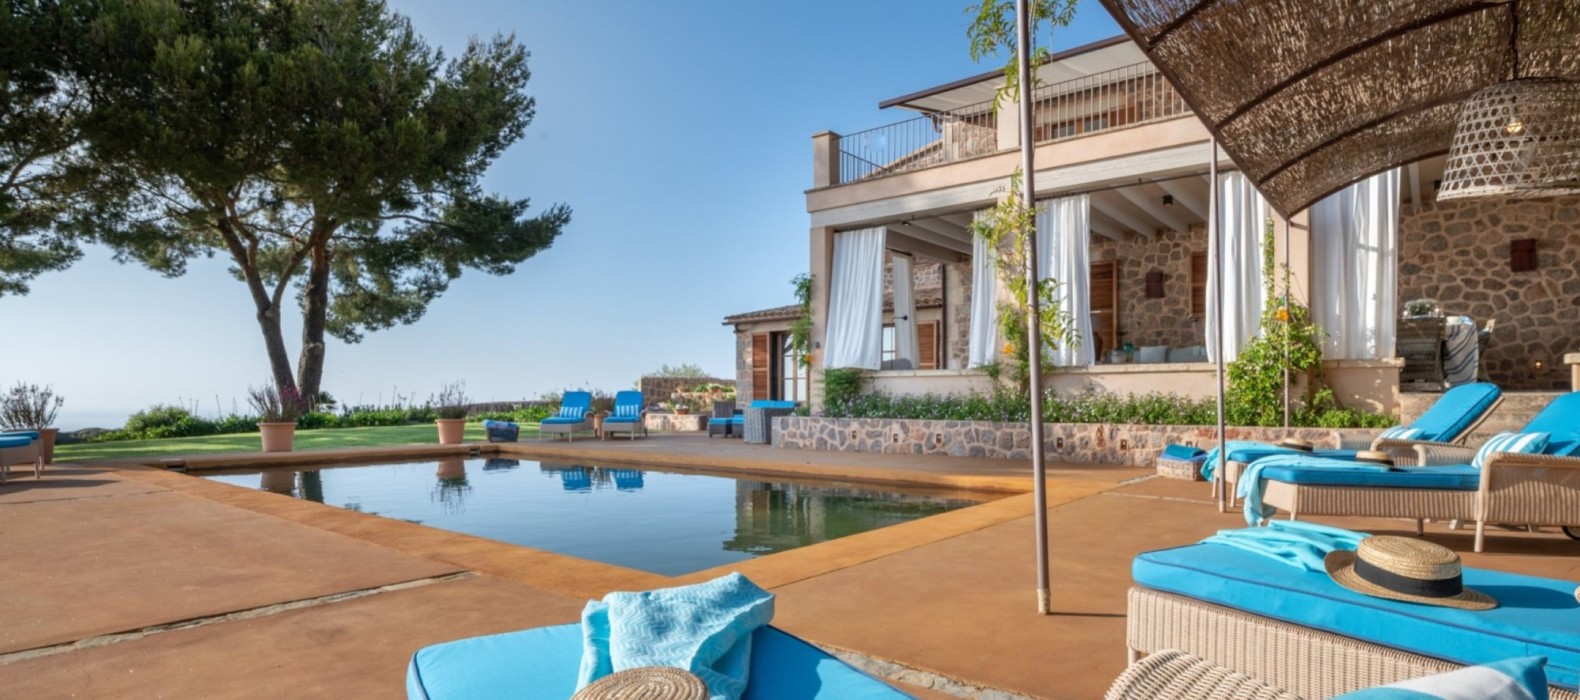 Exterior pool area of Villa Scorpio in Mallorca